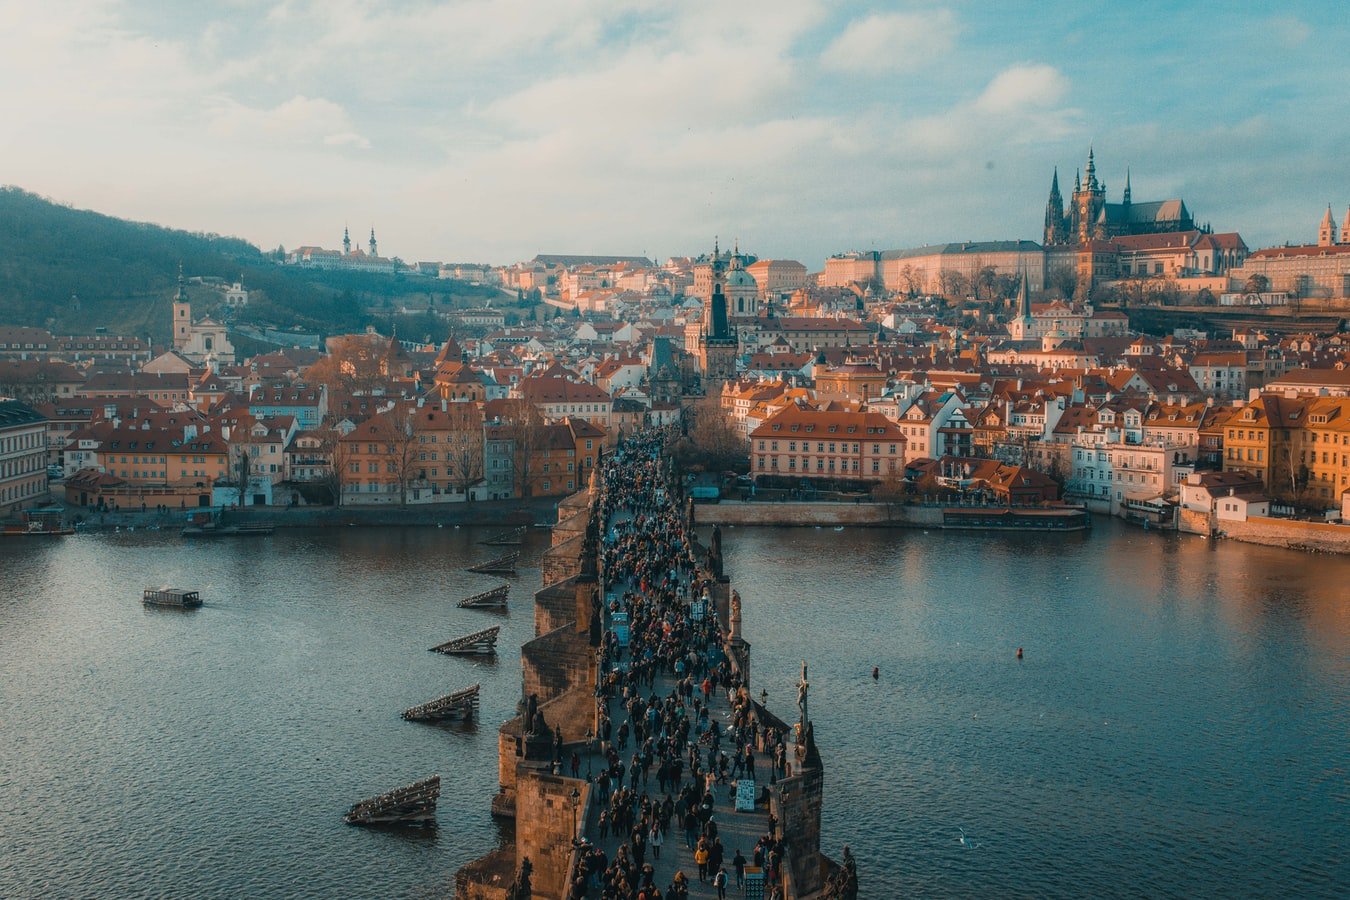 ปราก (Prague) เมืองสุดโรแมนติคแห่ง "สาธารณรัฐเช็ก (Czech Republic)"